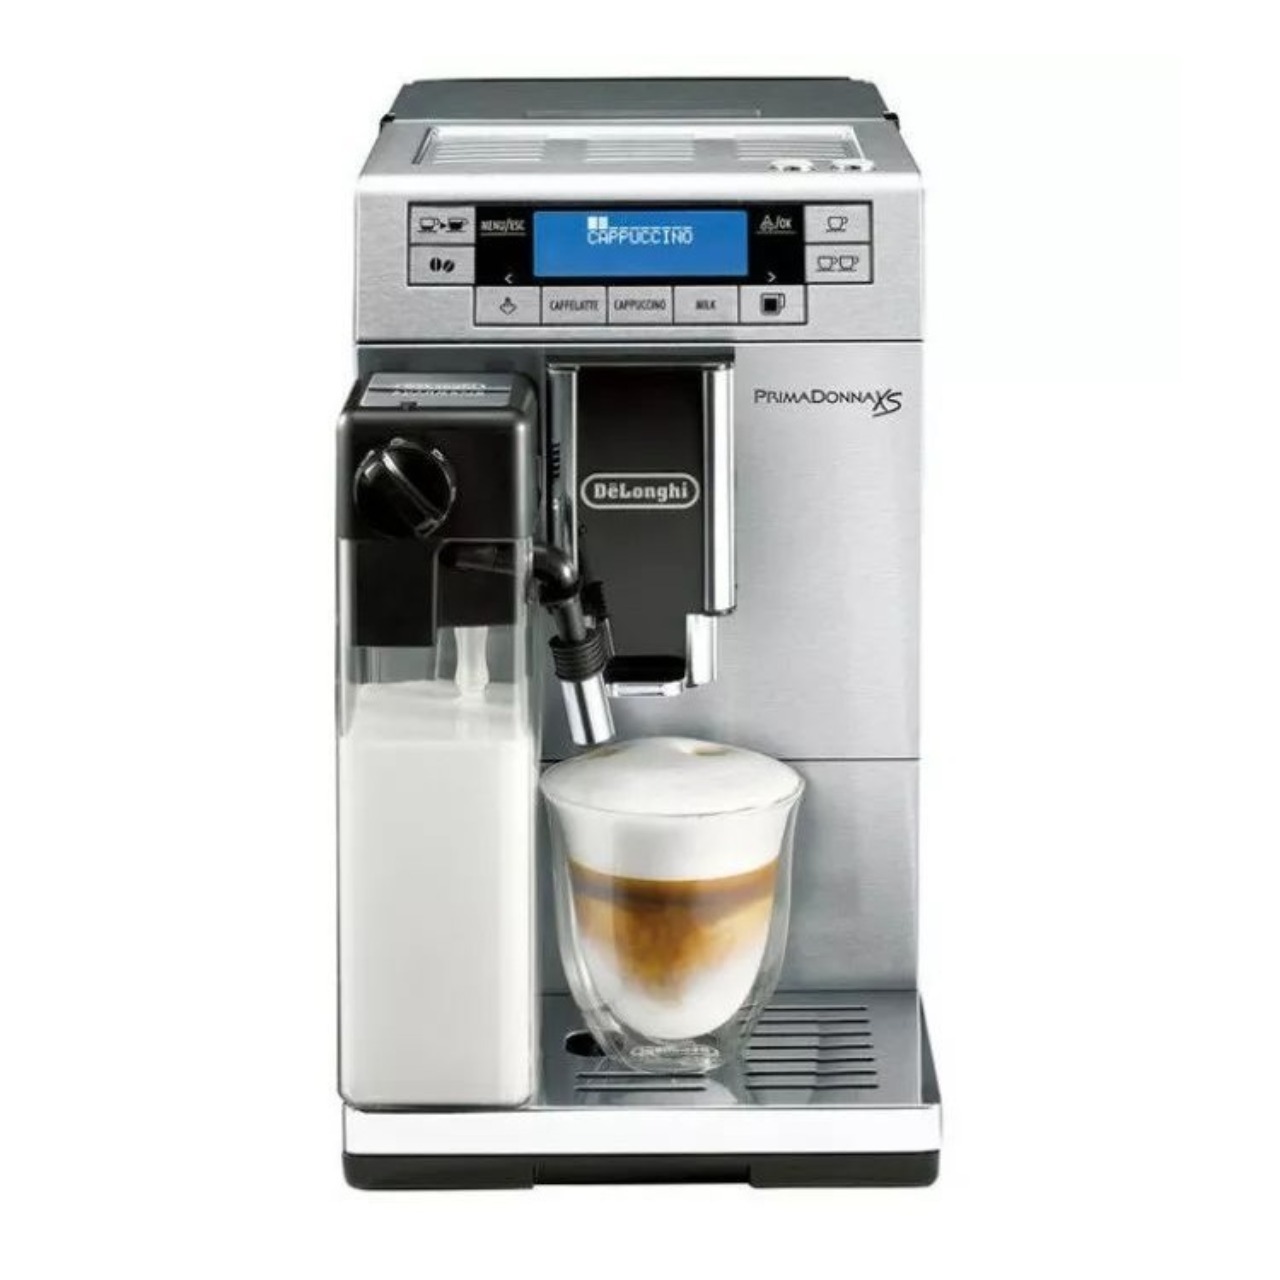 デロンギ プリマドンナXS ETAM36365MB全自動コーヒーメーカー